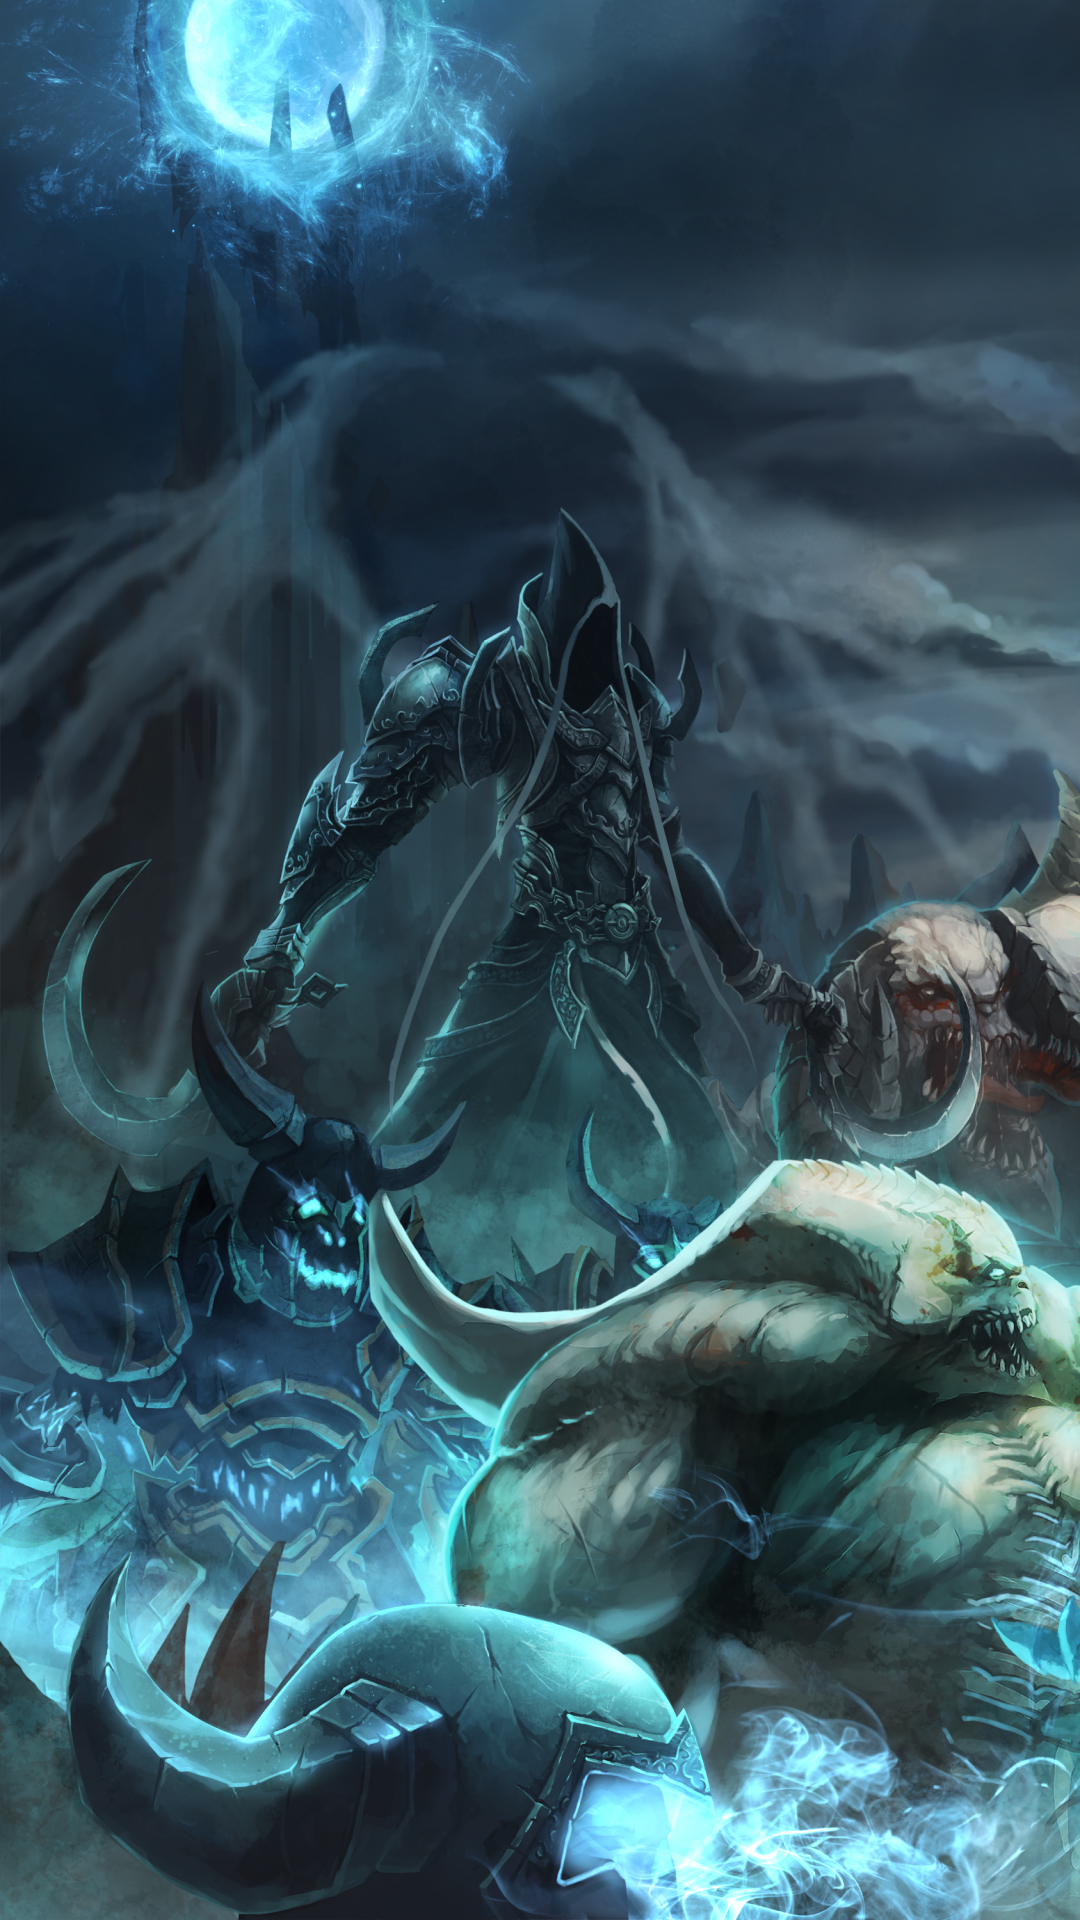 Download mobile wallpaper Diablo, Video Game, Malthael (Diablo Iii), Diablo Iii: Reaper Of Souls for free.